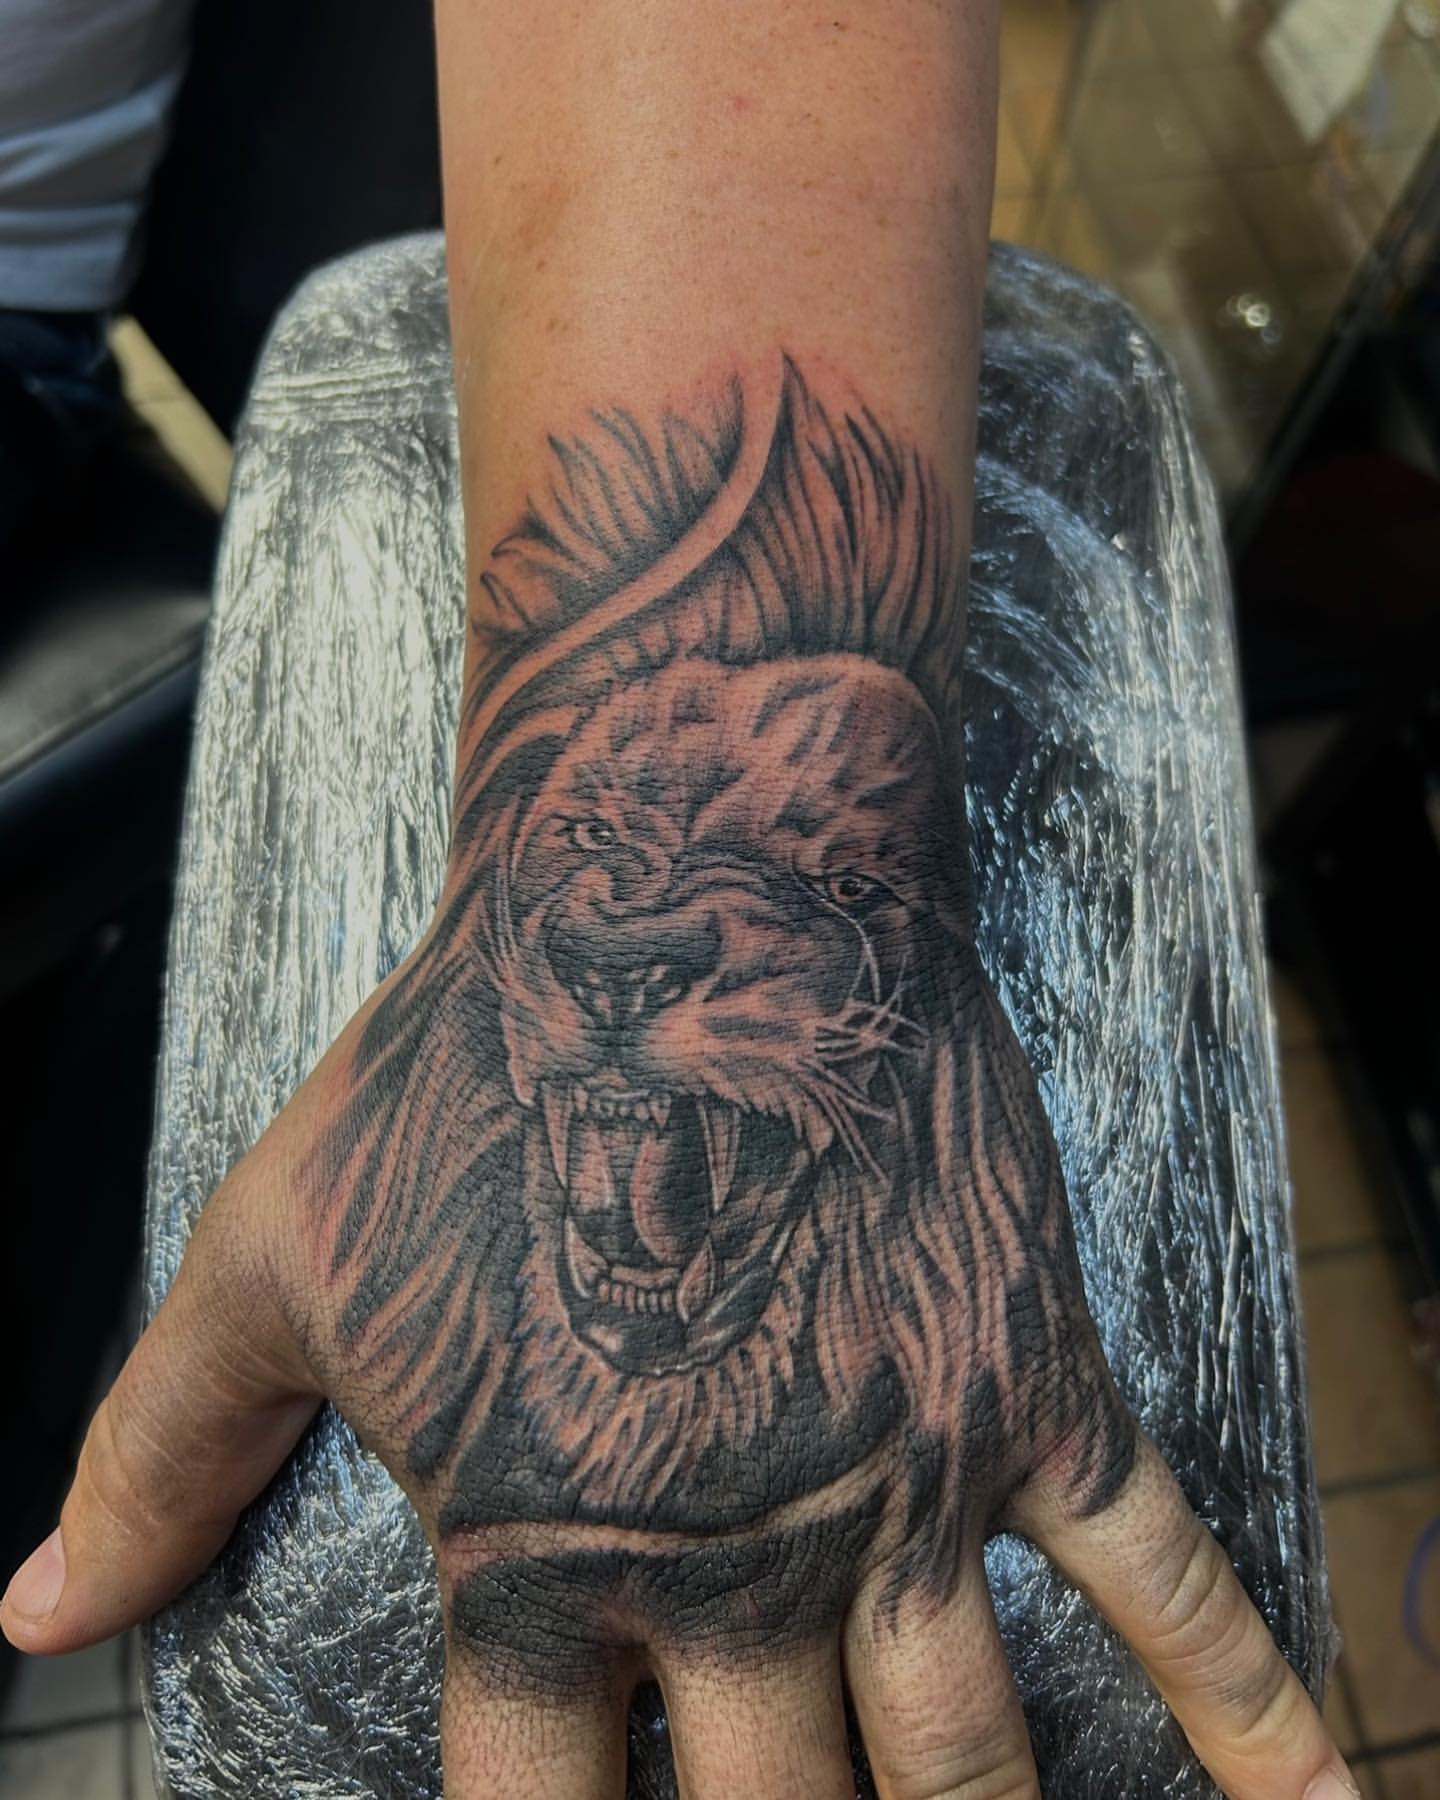 Tattoo Ideas For Men, Lion Tattoo